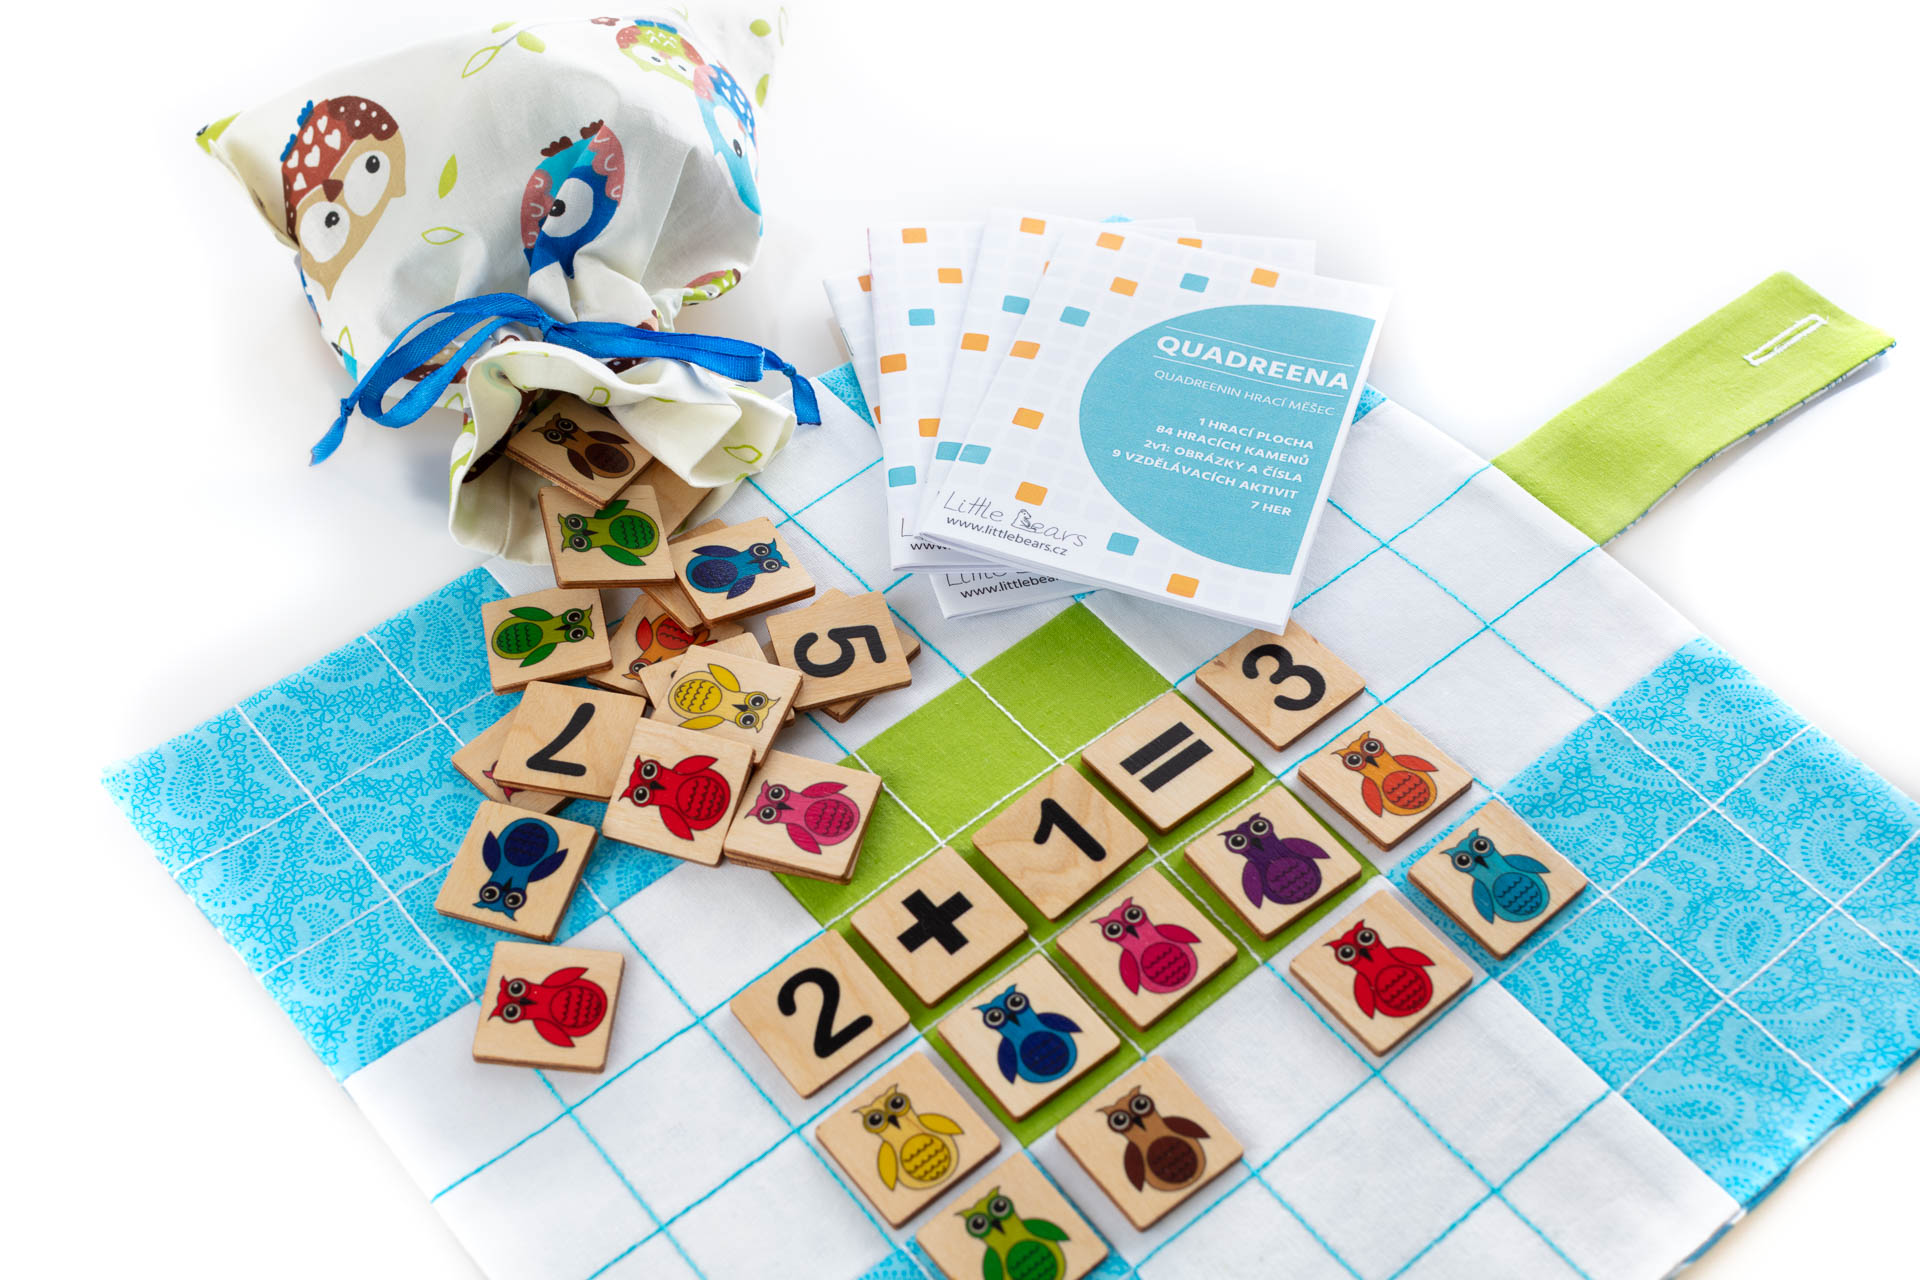 Logická hra QUADREENA, která je kombinací obrázkového a číselného sudoku. Vhodné pro předškolní a mladší školní věk.